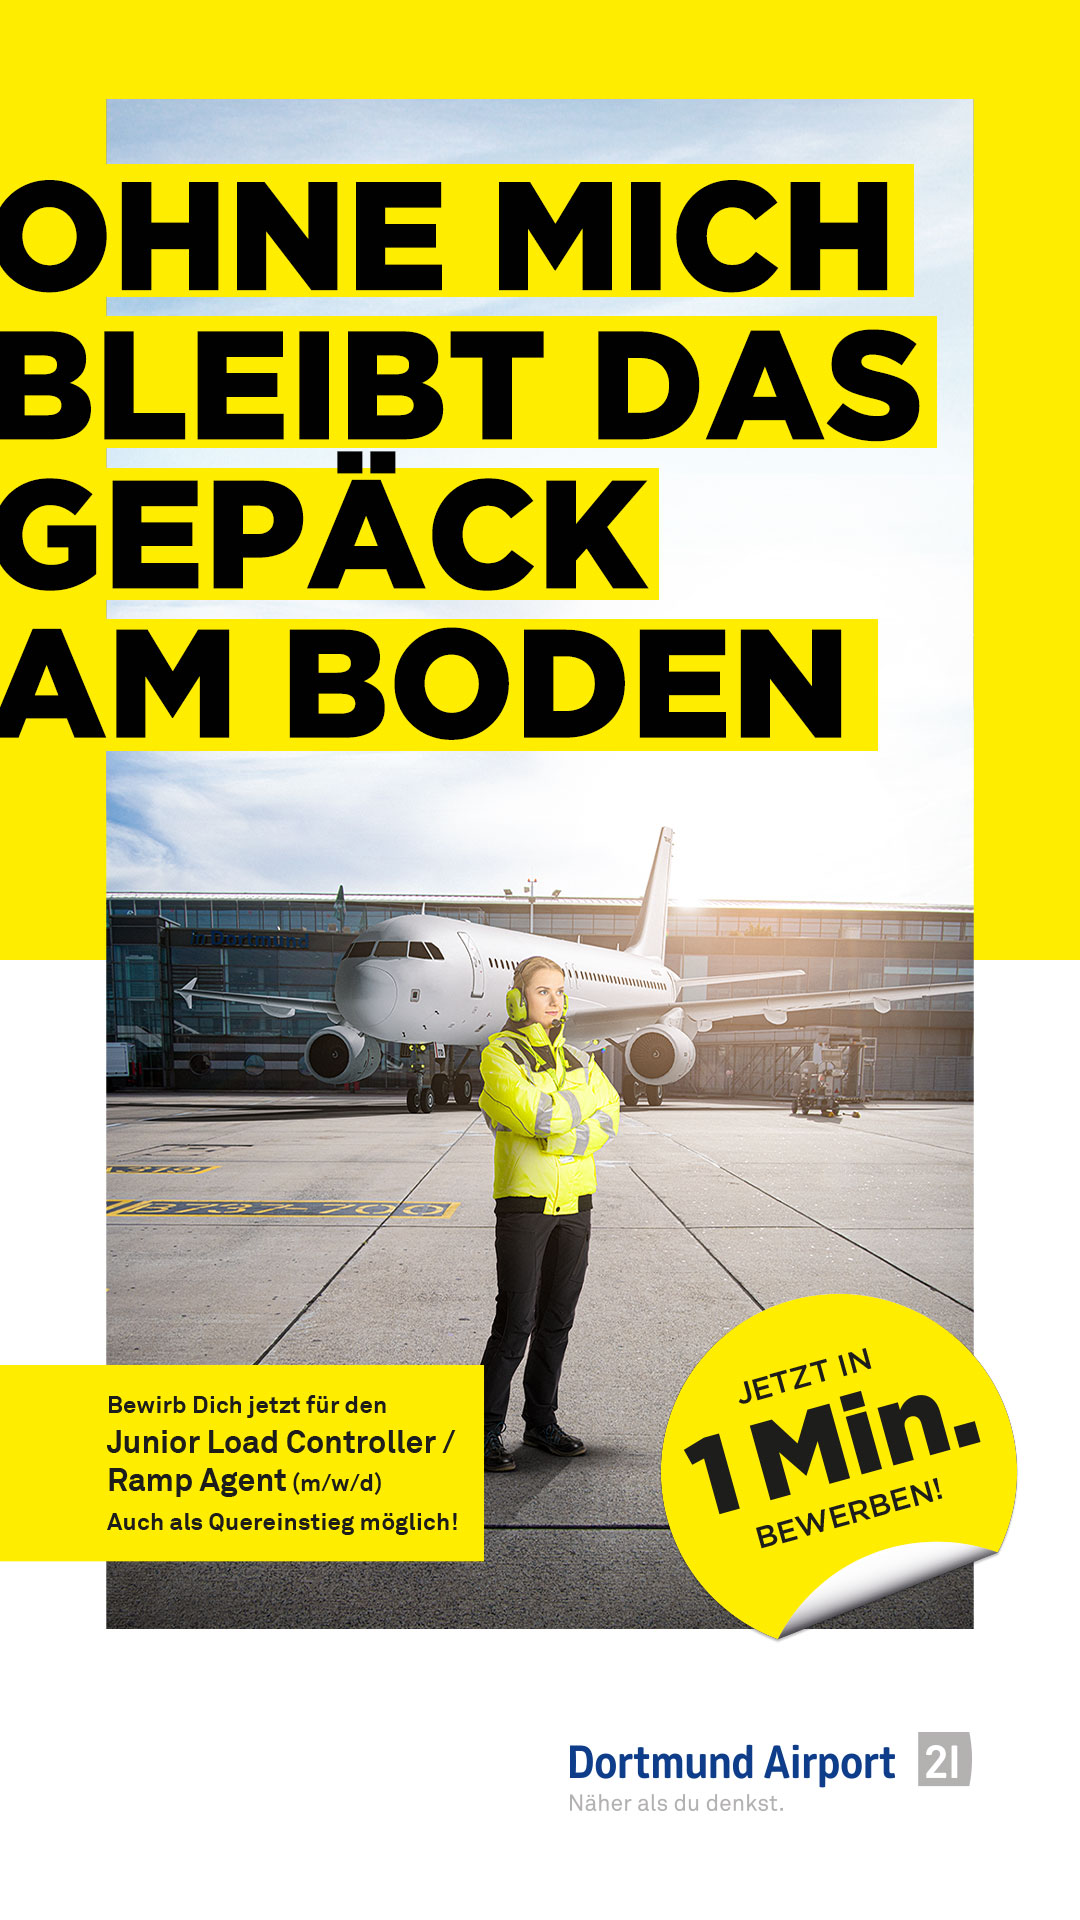 Stellenanzeige Dortmund Airport, Mitarbeiter vor Flugzeug, "Ohne mich bleibt das Gepäck am Boden", Schnellbewerbung